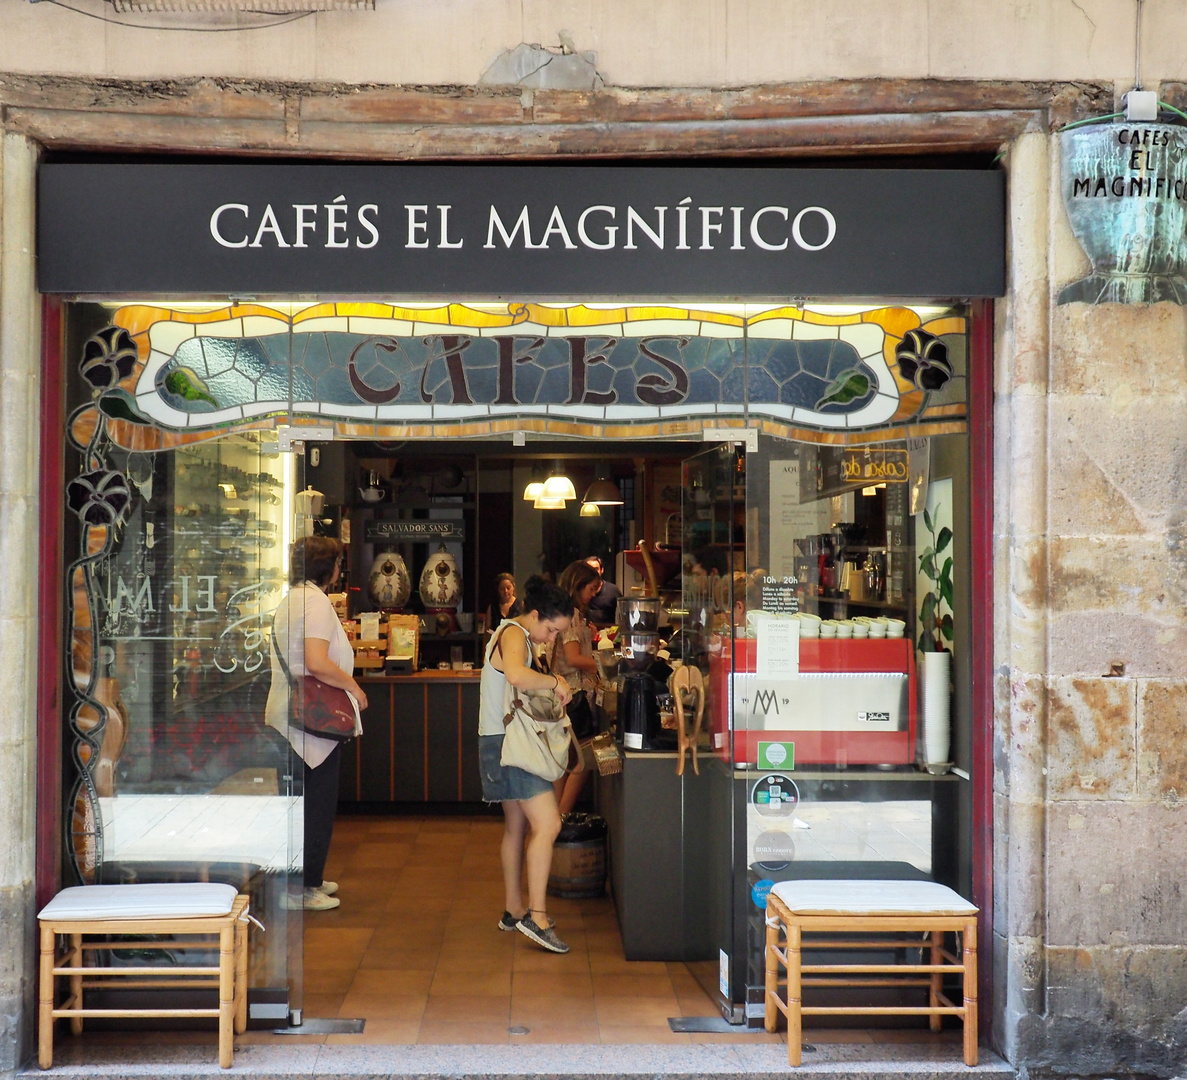 Caffe in Barcelona